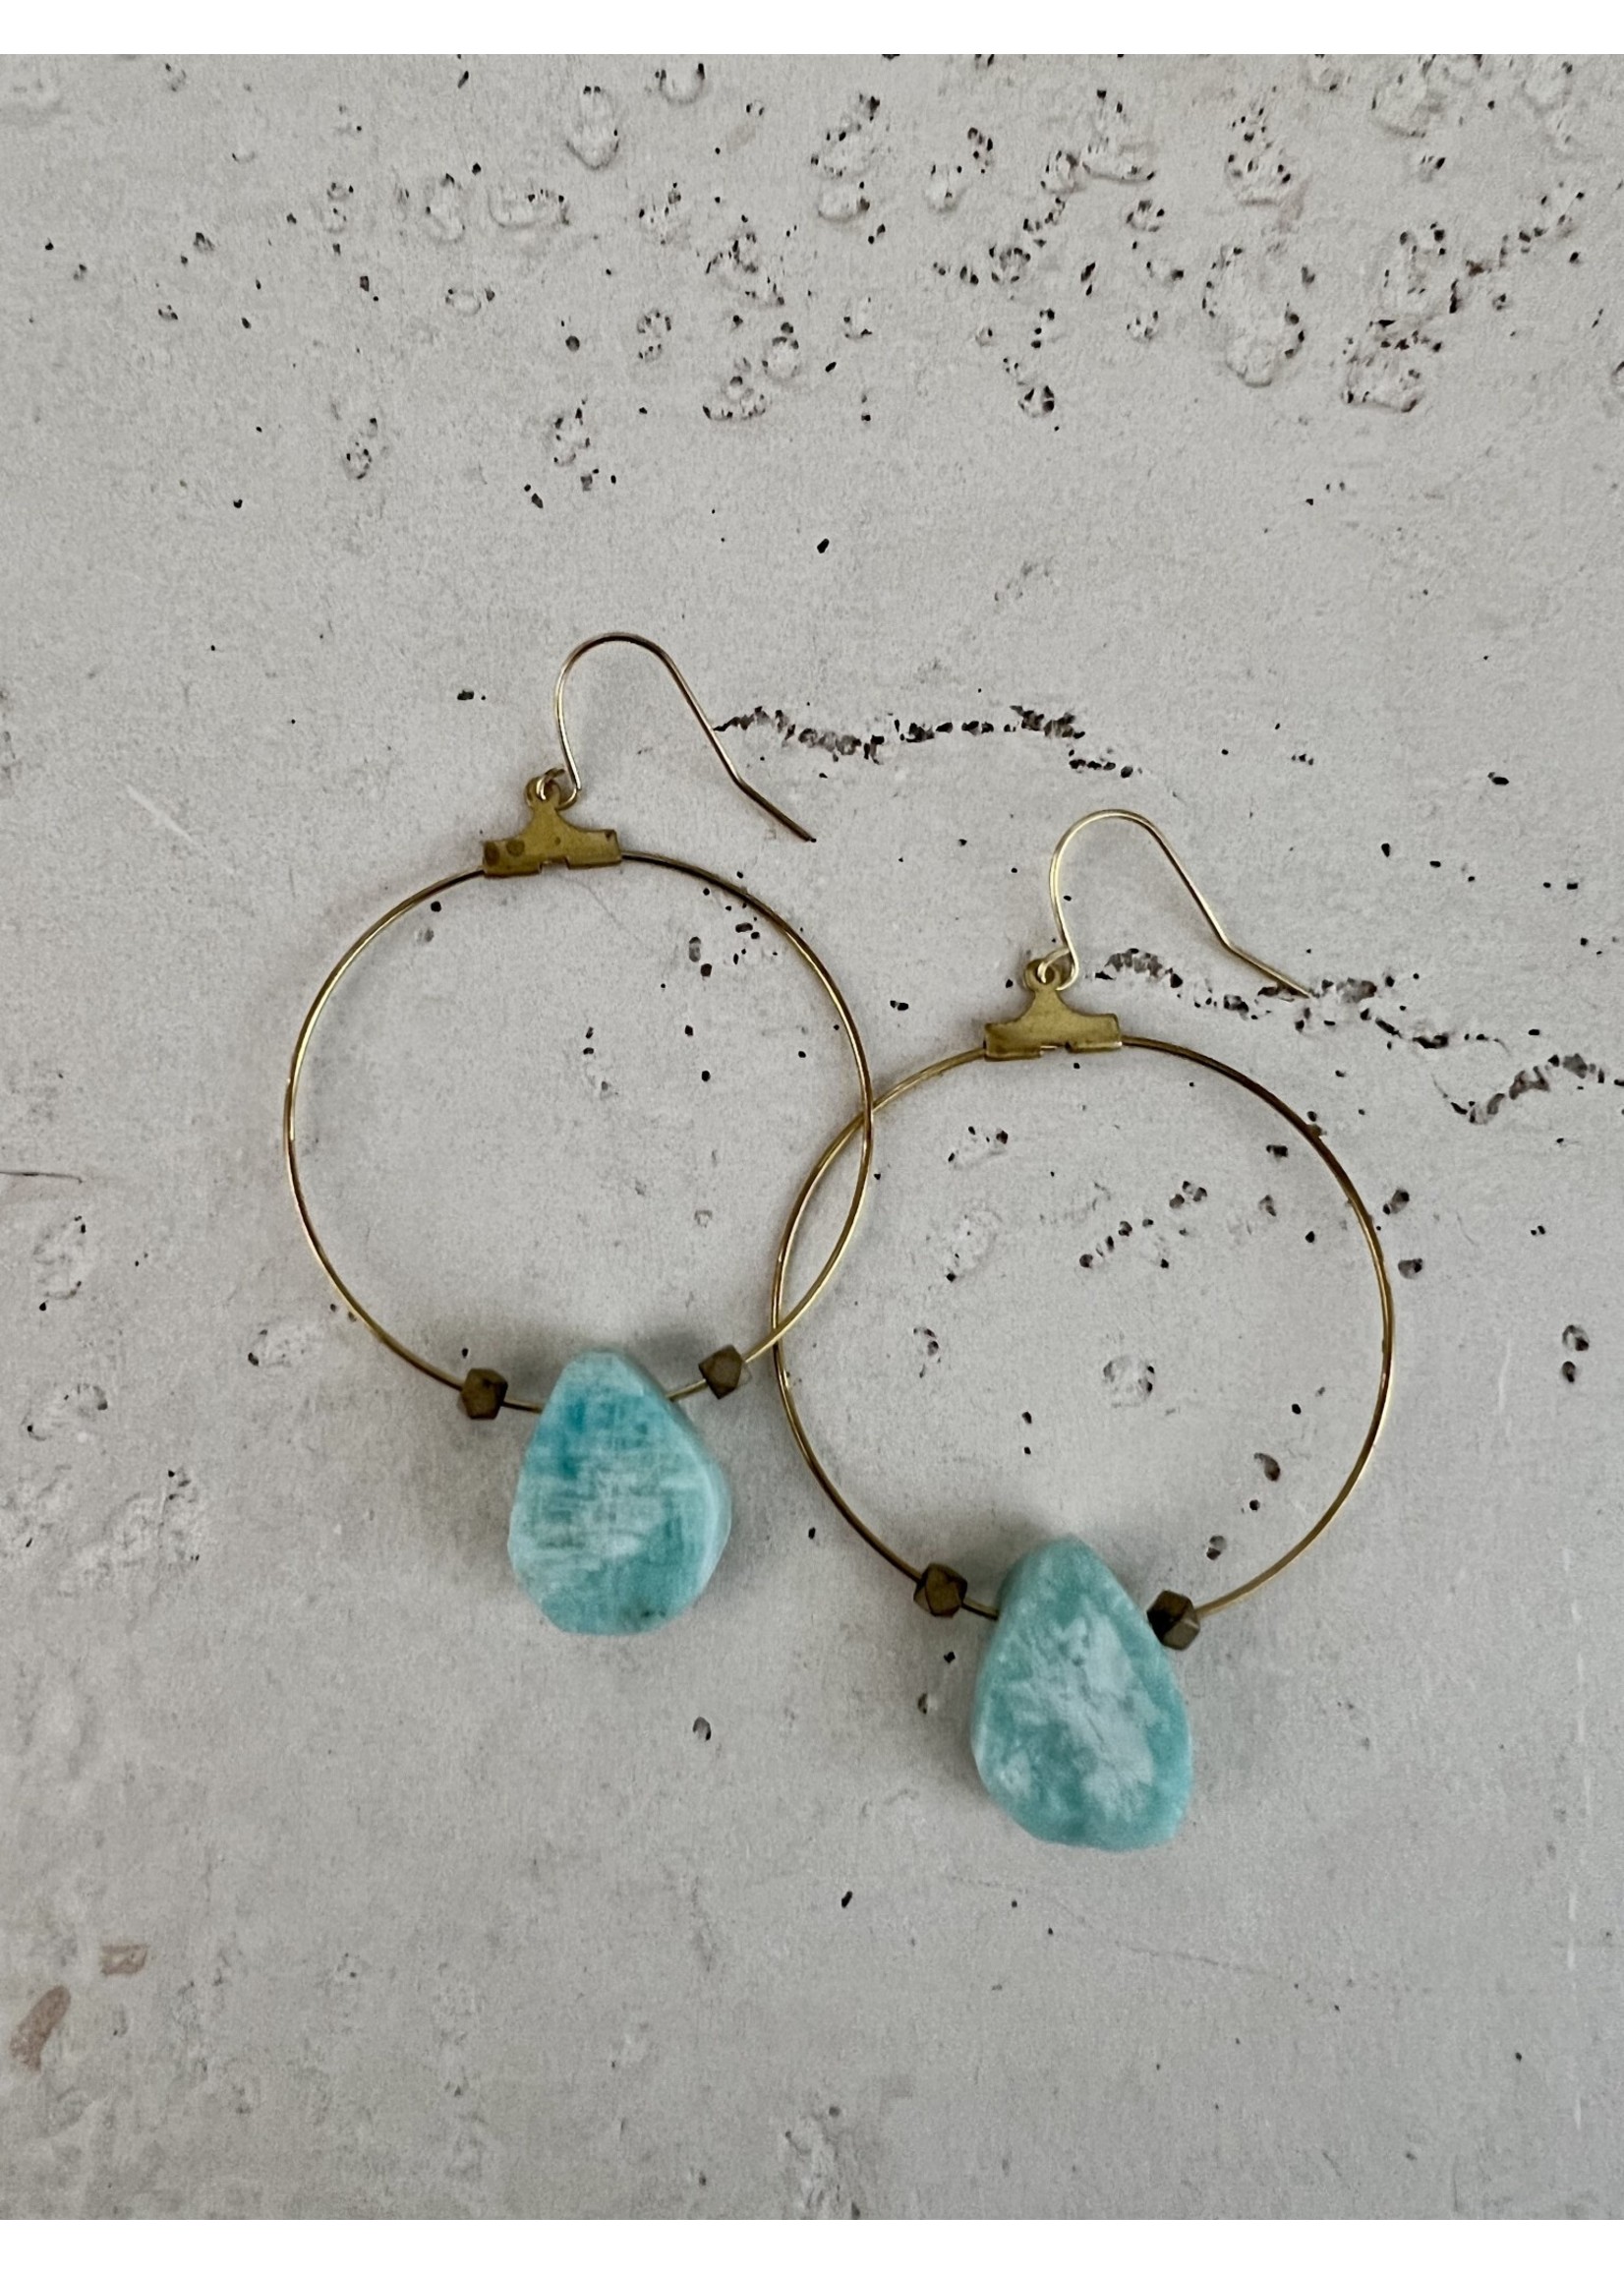 Vibe Jewelry Co. Amazonite Teardrop Hoop Earrings - Gold